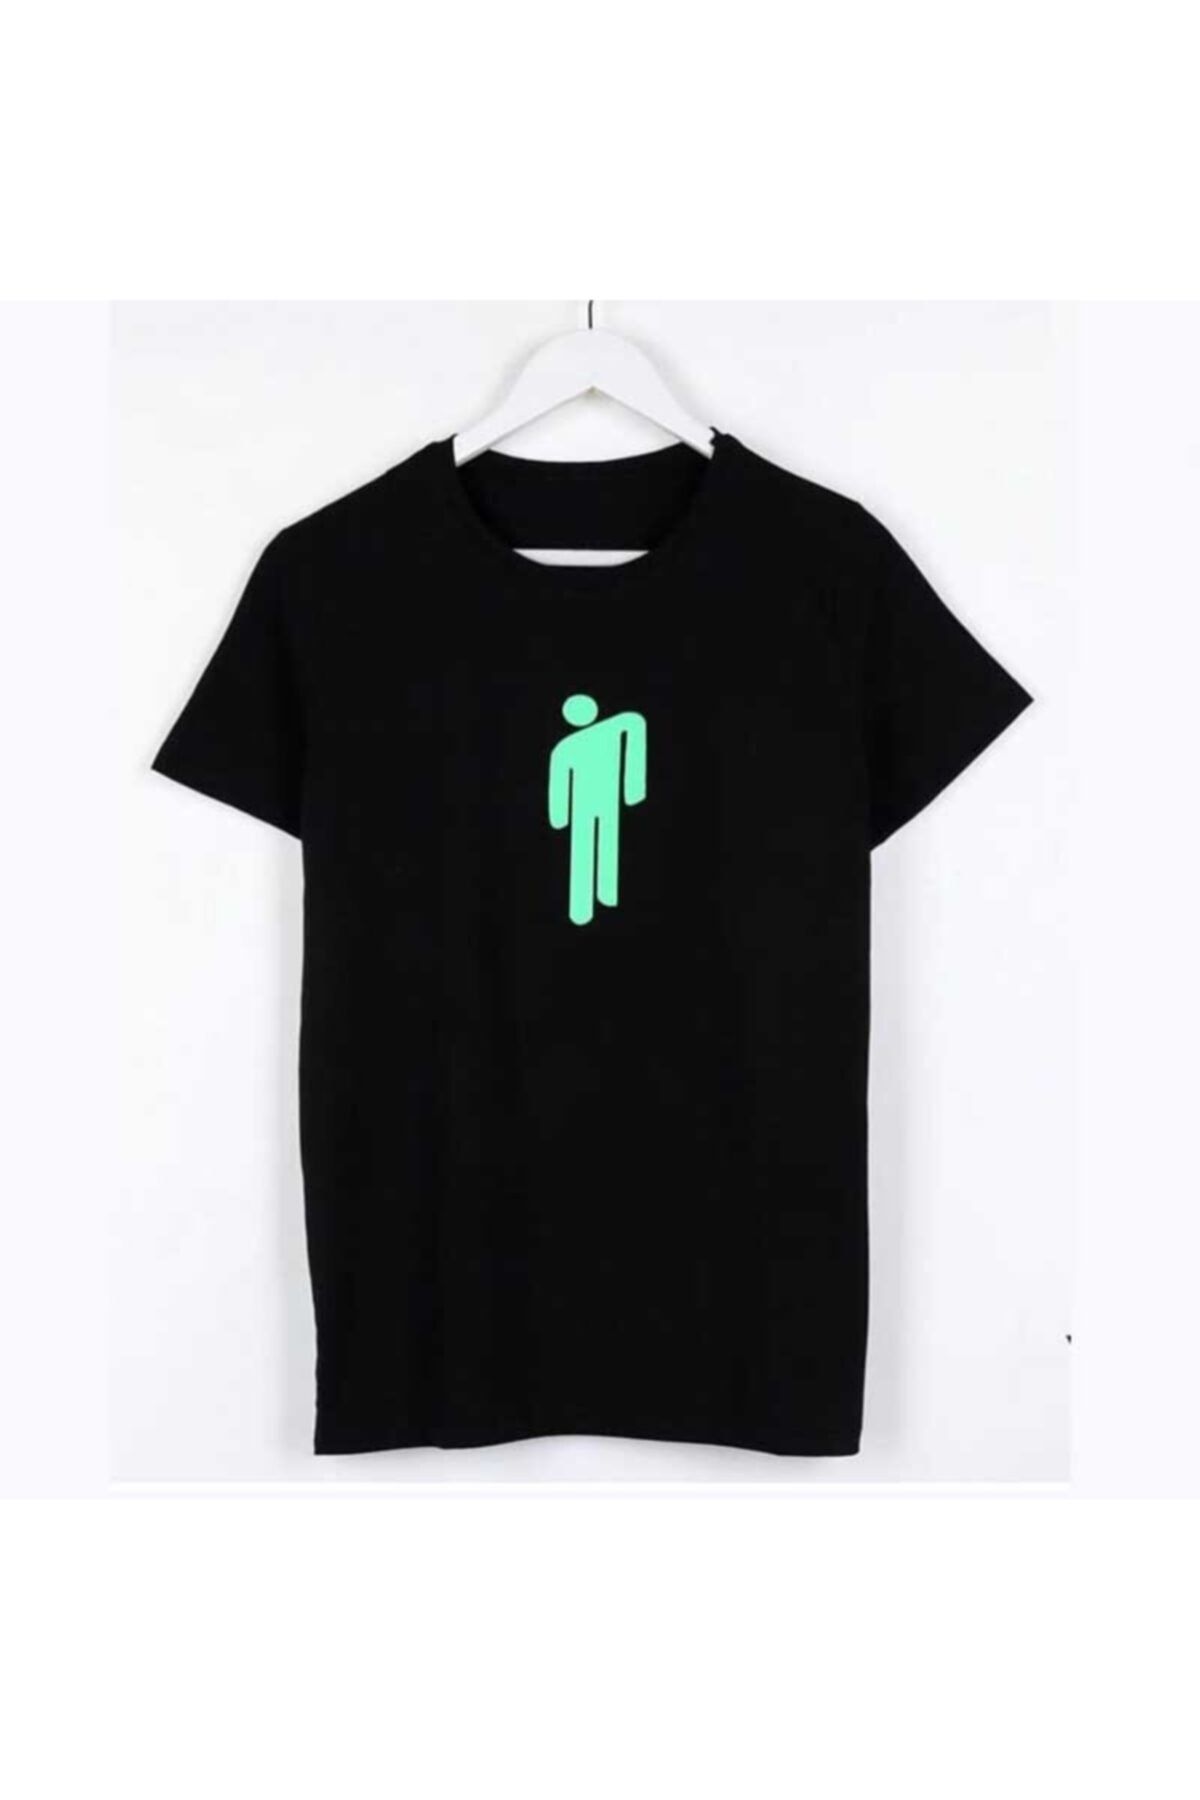 Köstebek Siyah Üzeri Yeşil Baskı Billie Eilish Logo Unisex T-shirt